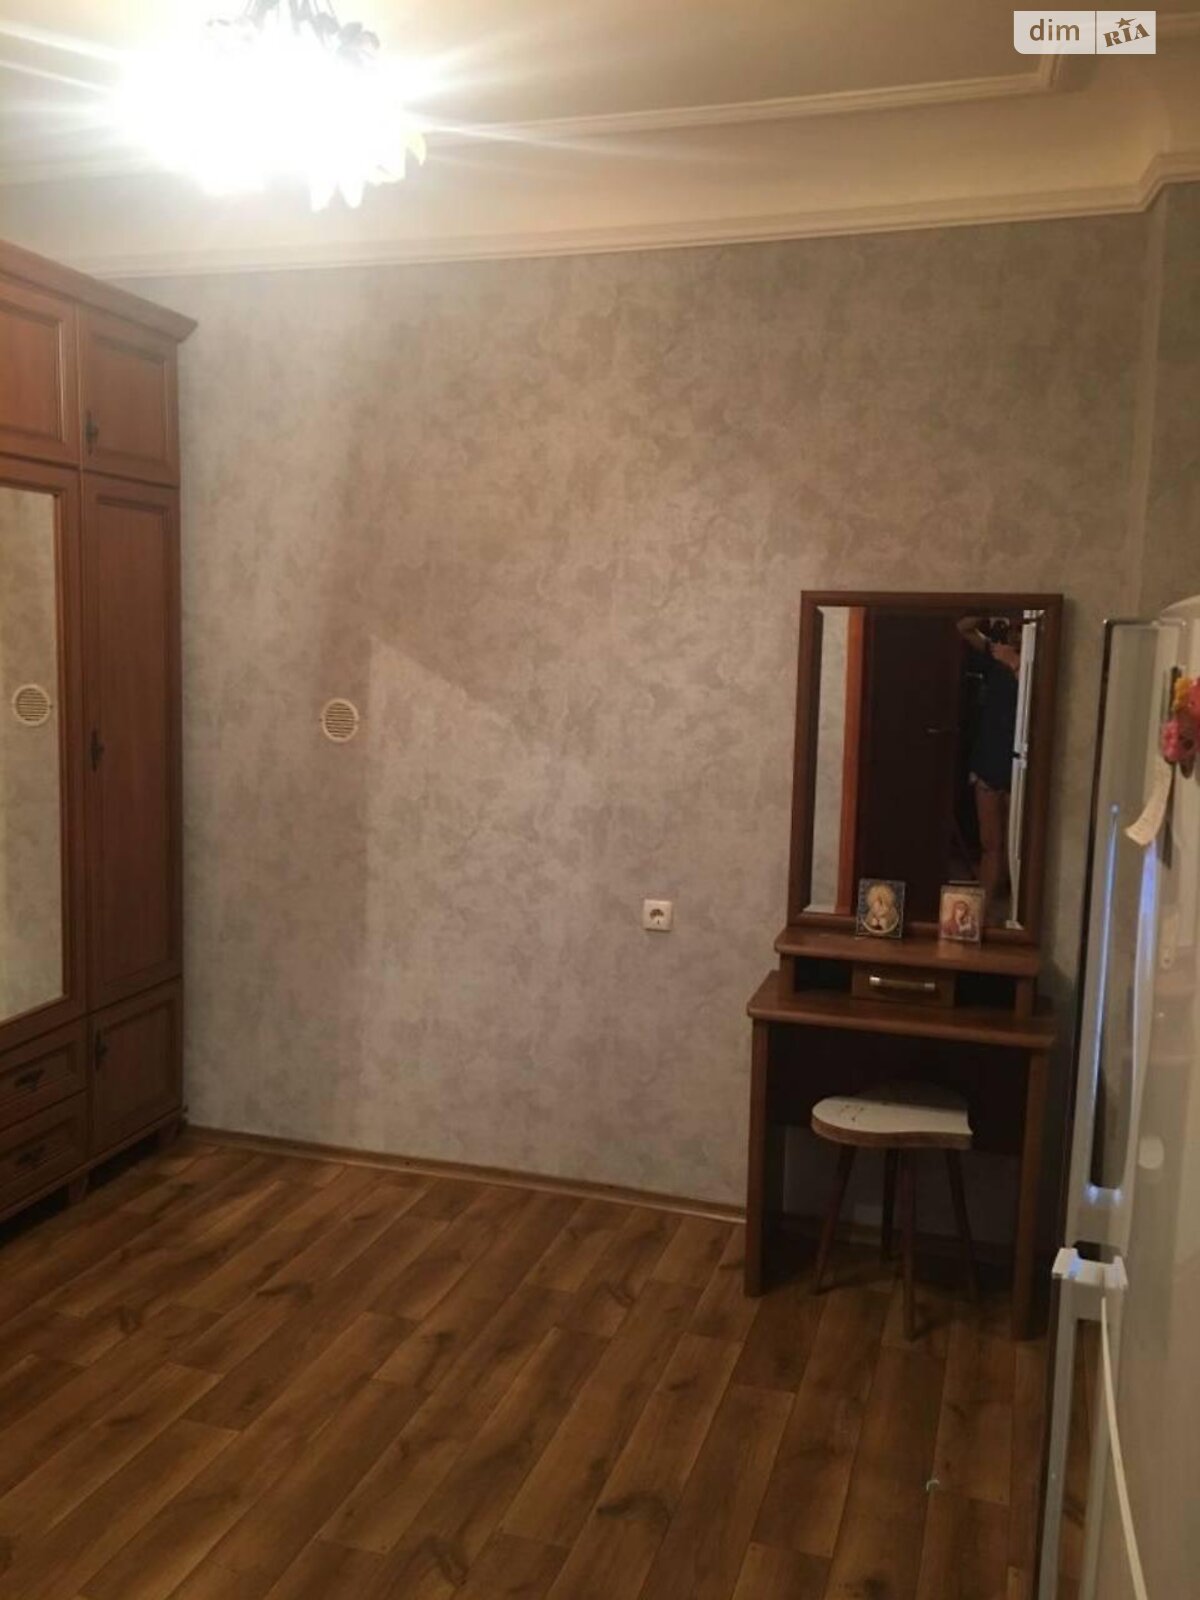 Продажа части дома в Одессе, улица Жемчужная (Зеленая) 3, район Черемушки, 1 комната фото 1